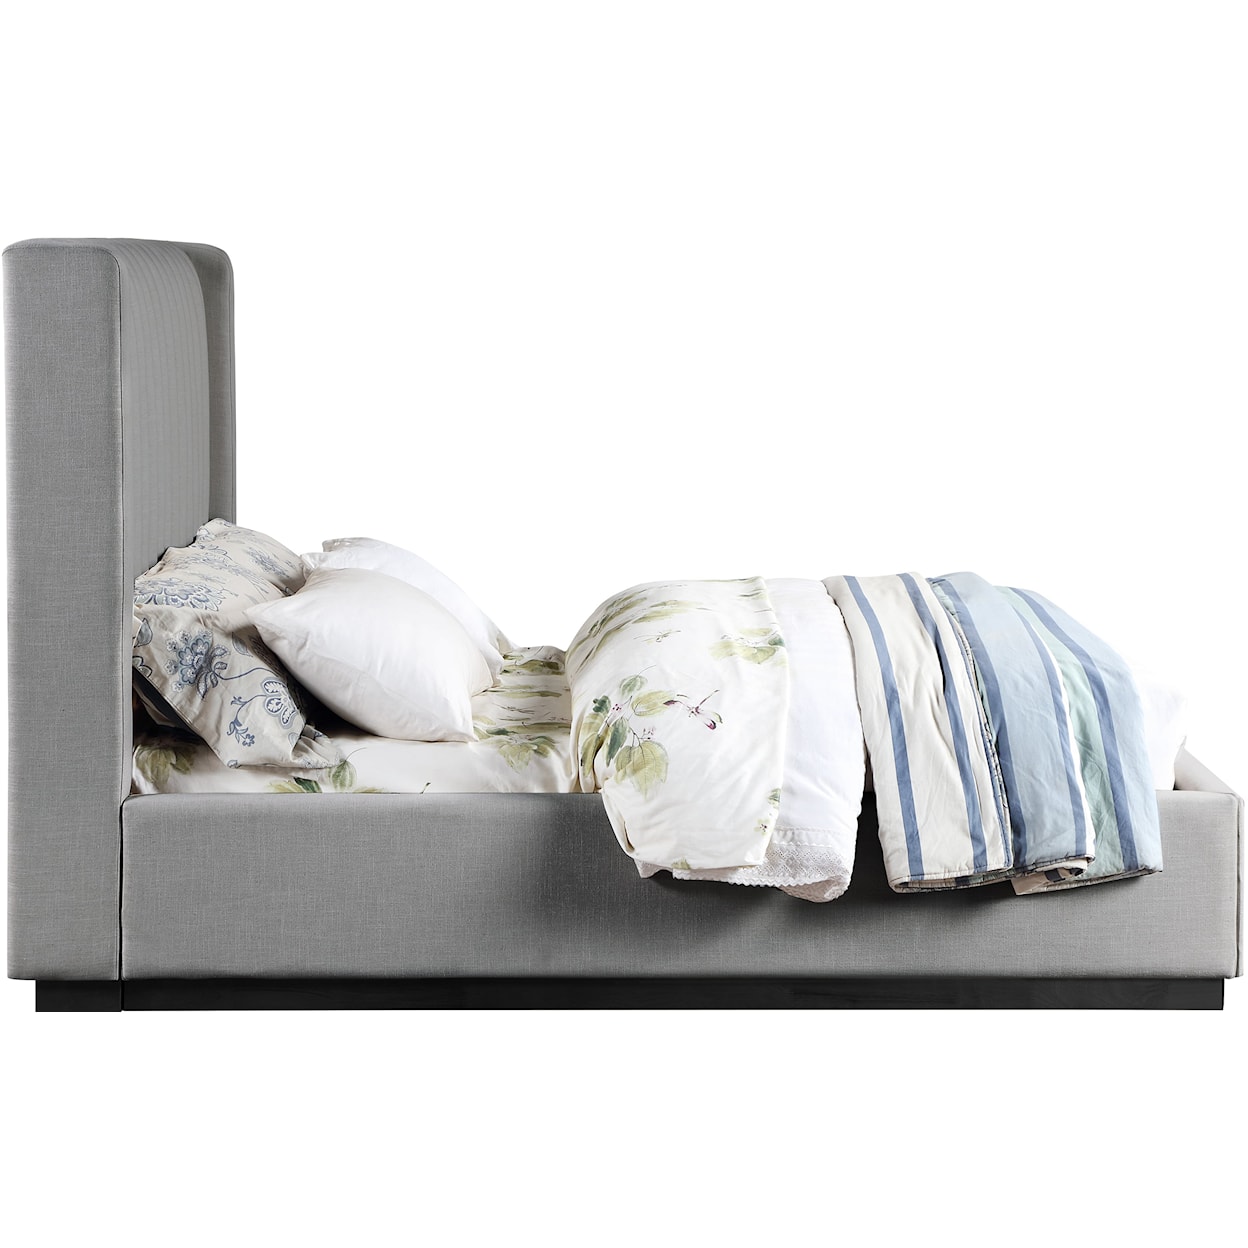 Meridian Furniture Logan Full Bed